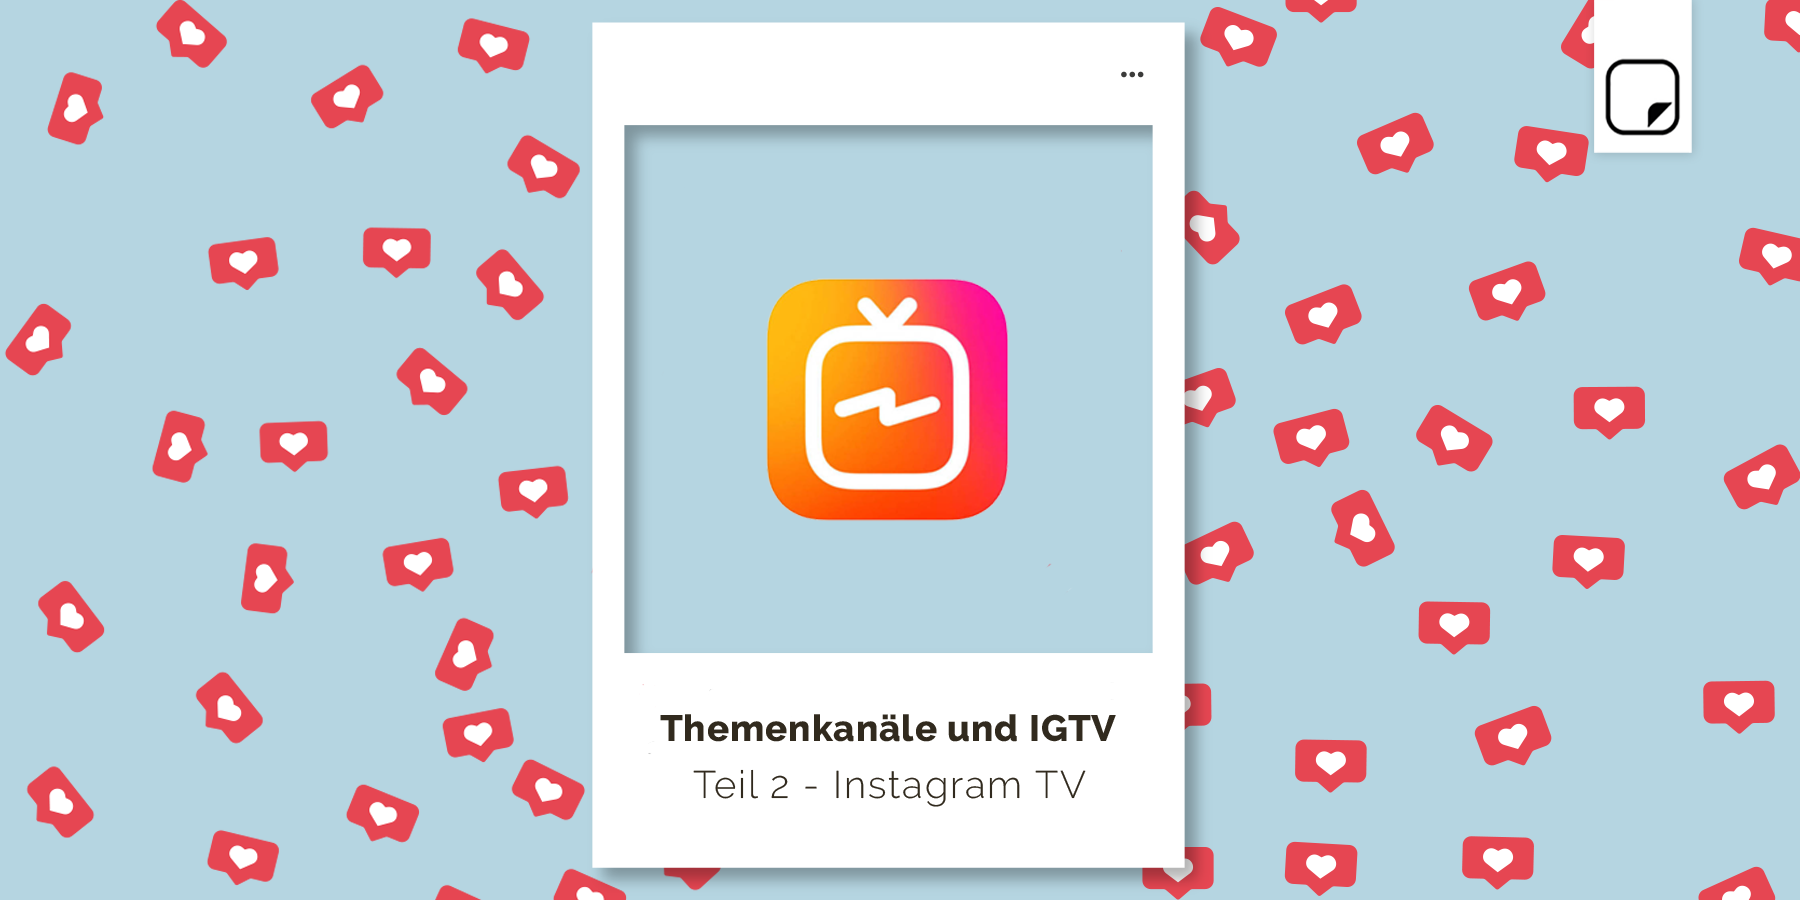 Themenkanäle und IGTV: Nutze die neuen Instagram Features, um dein Event viral in Umlauf zu bringen. Teil 2 – Instagram TV